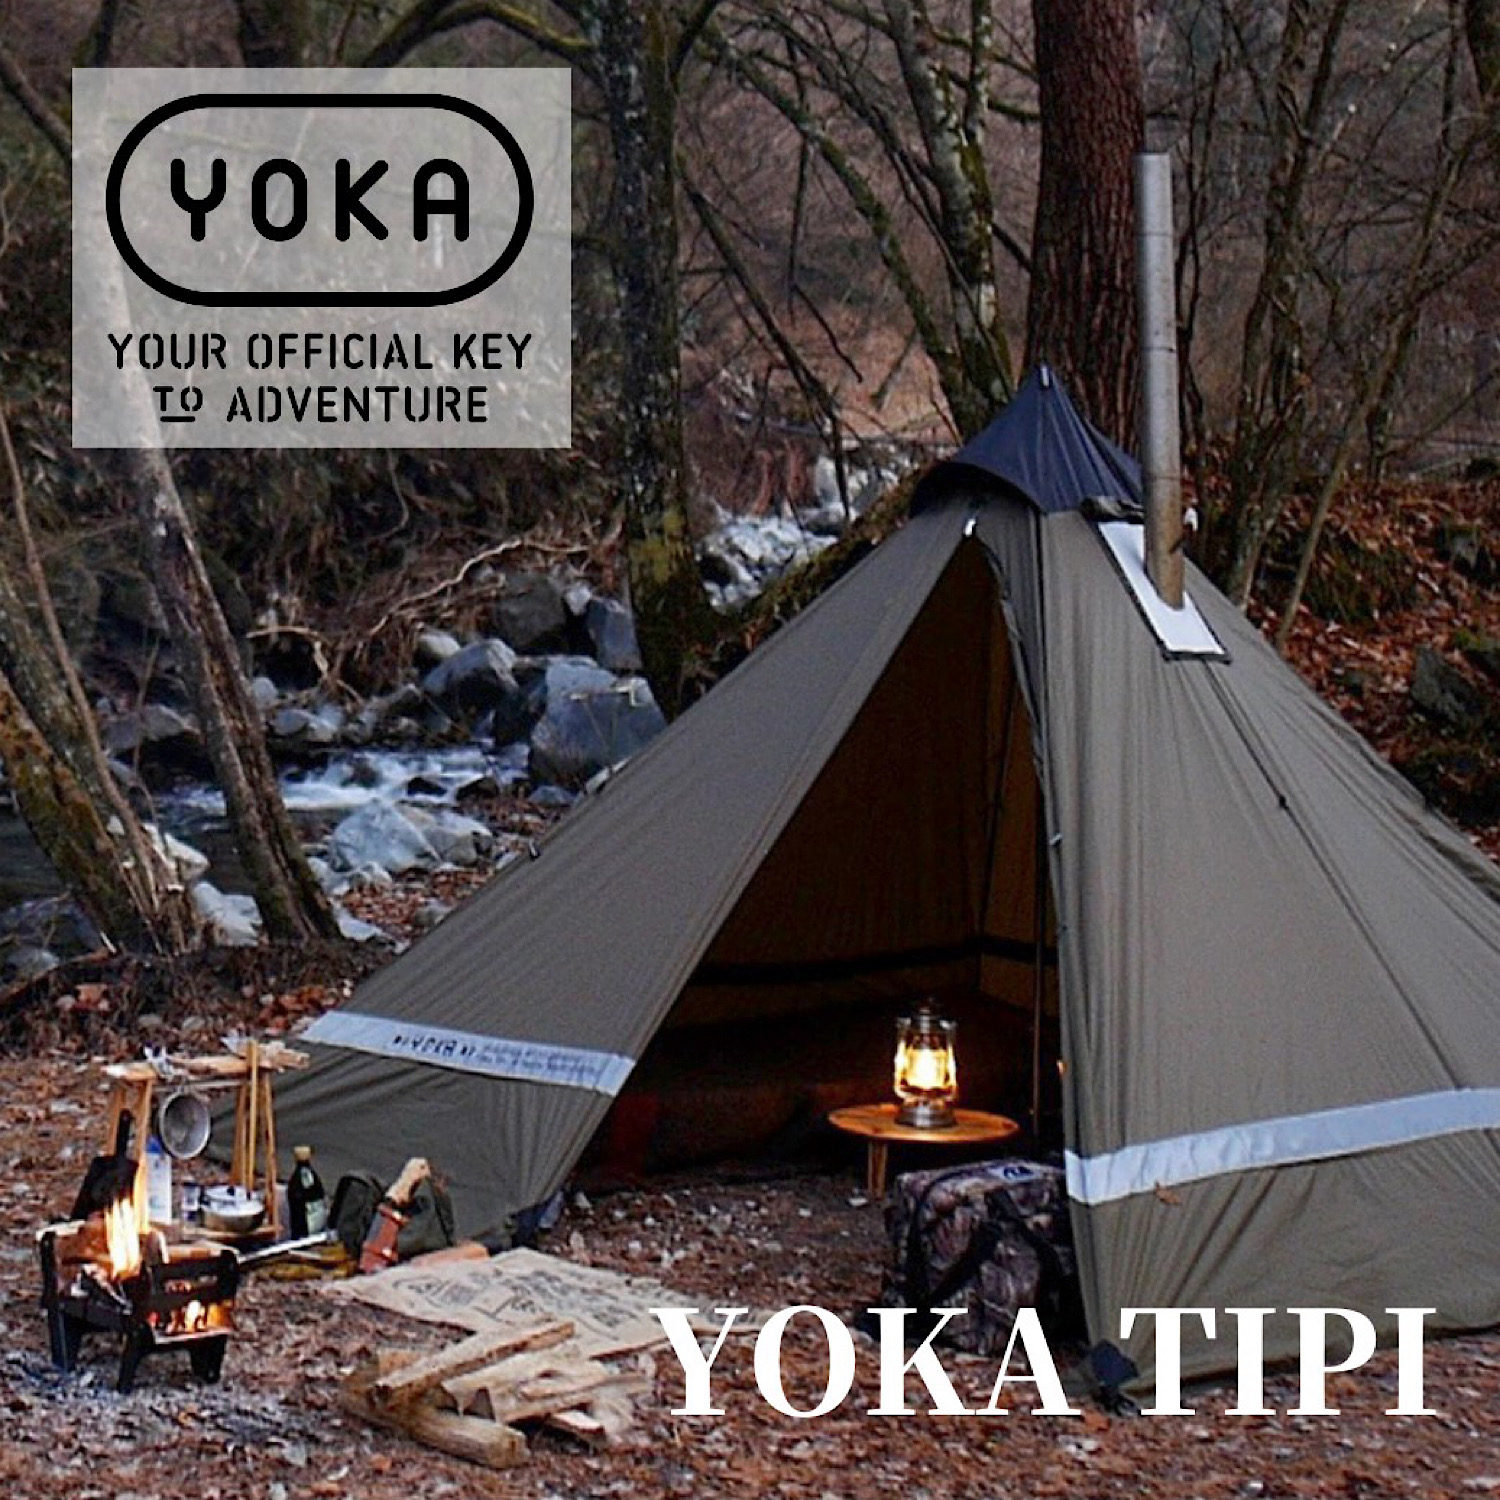 アレンジ力抜群な大人気テント「YOKA TIPI」を徹底レビュー